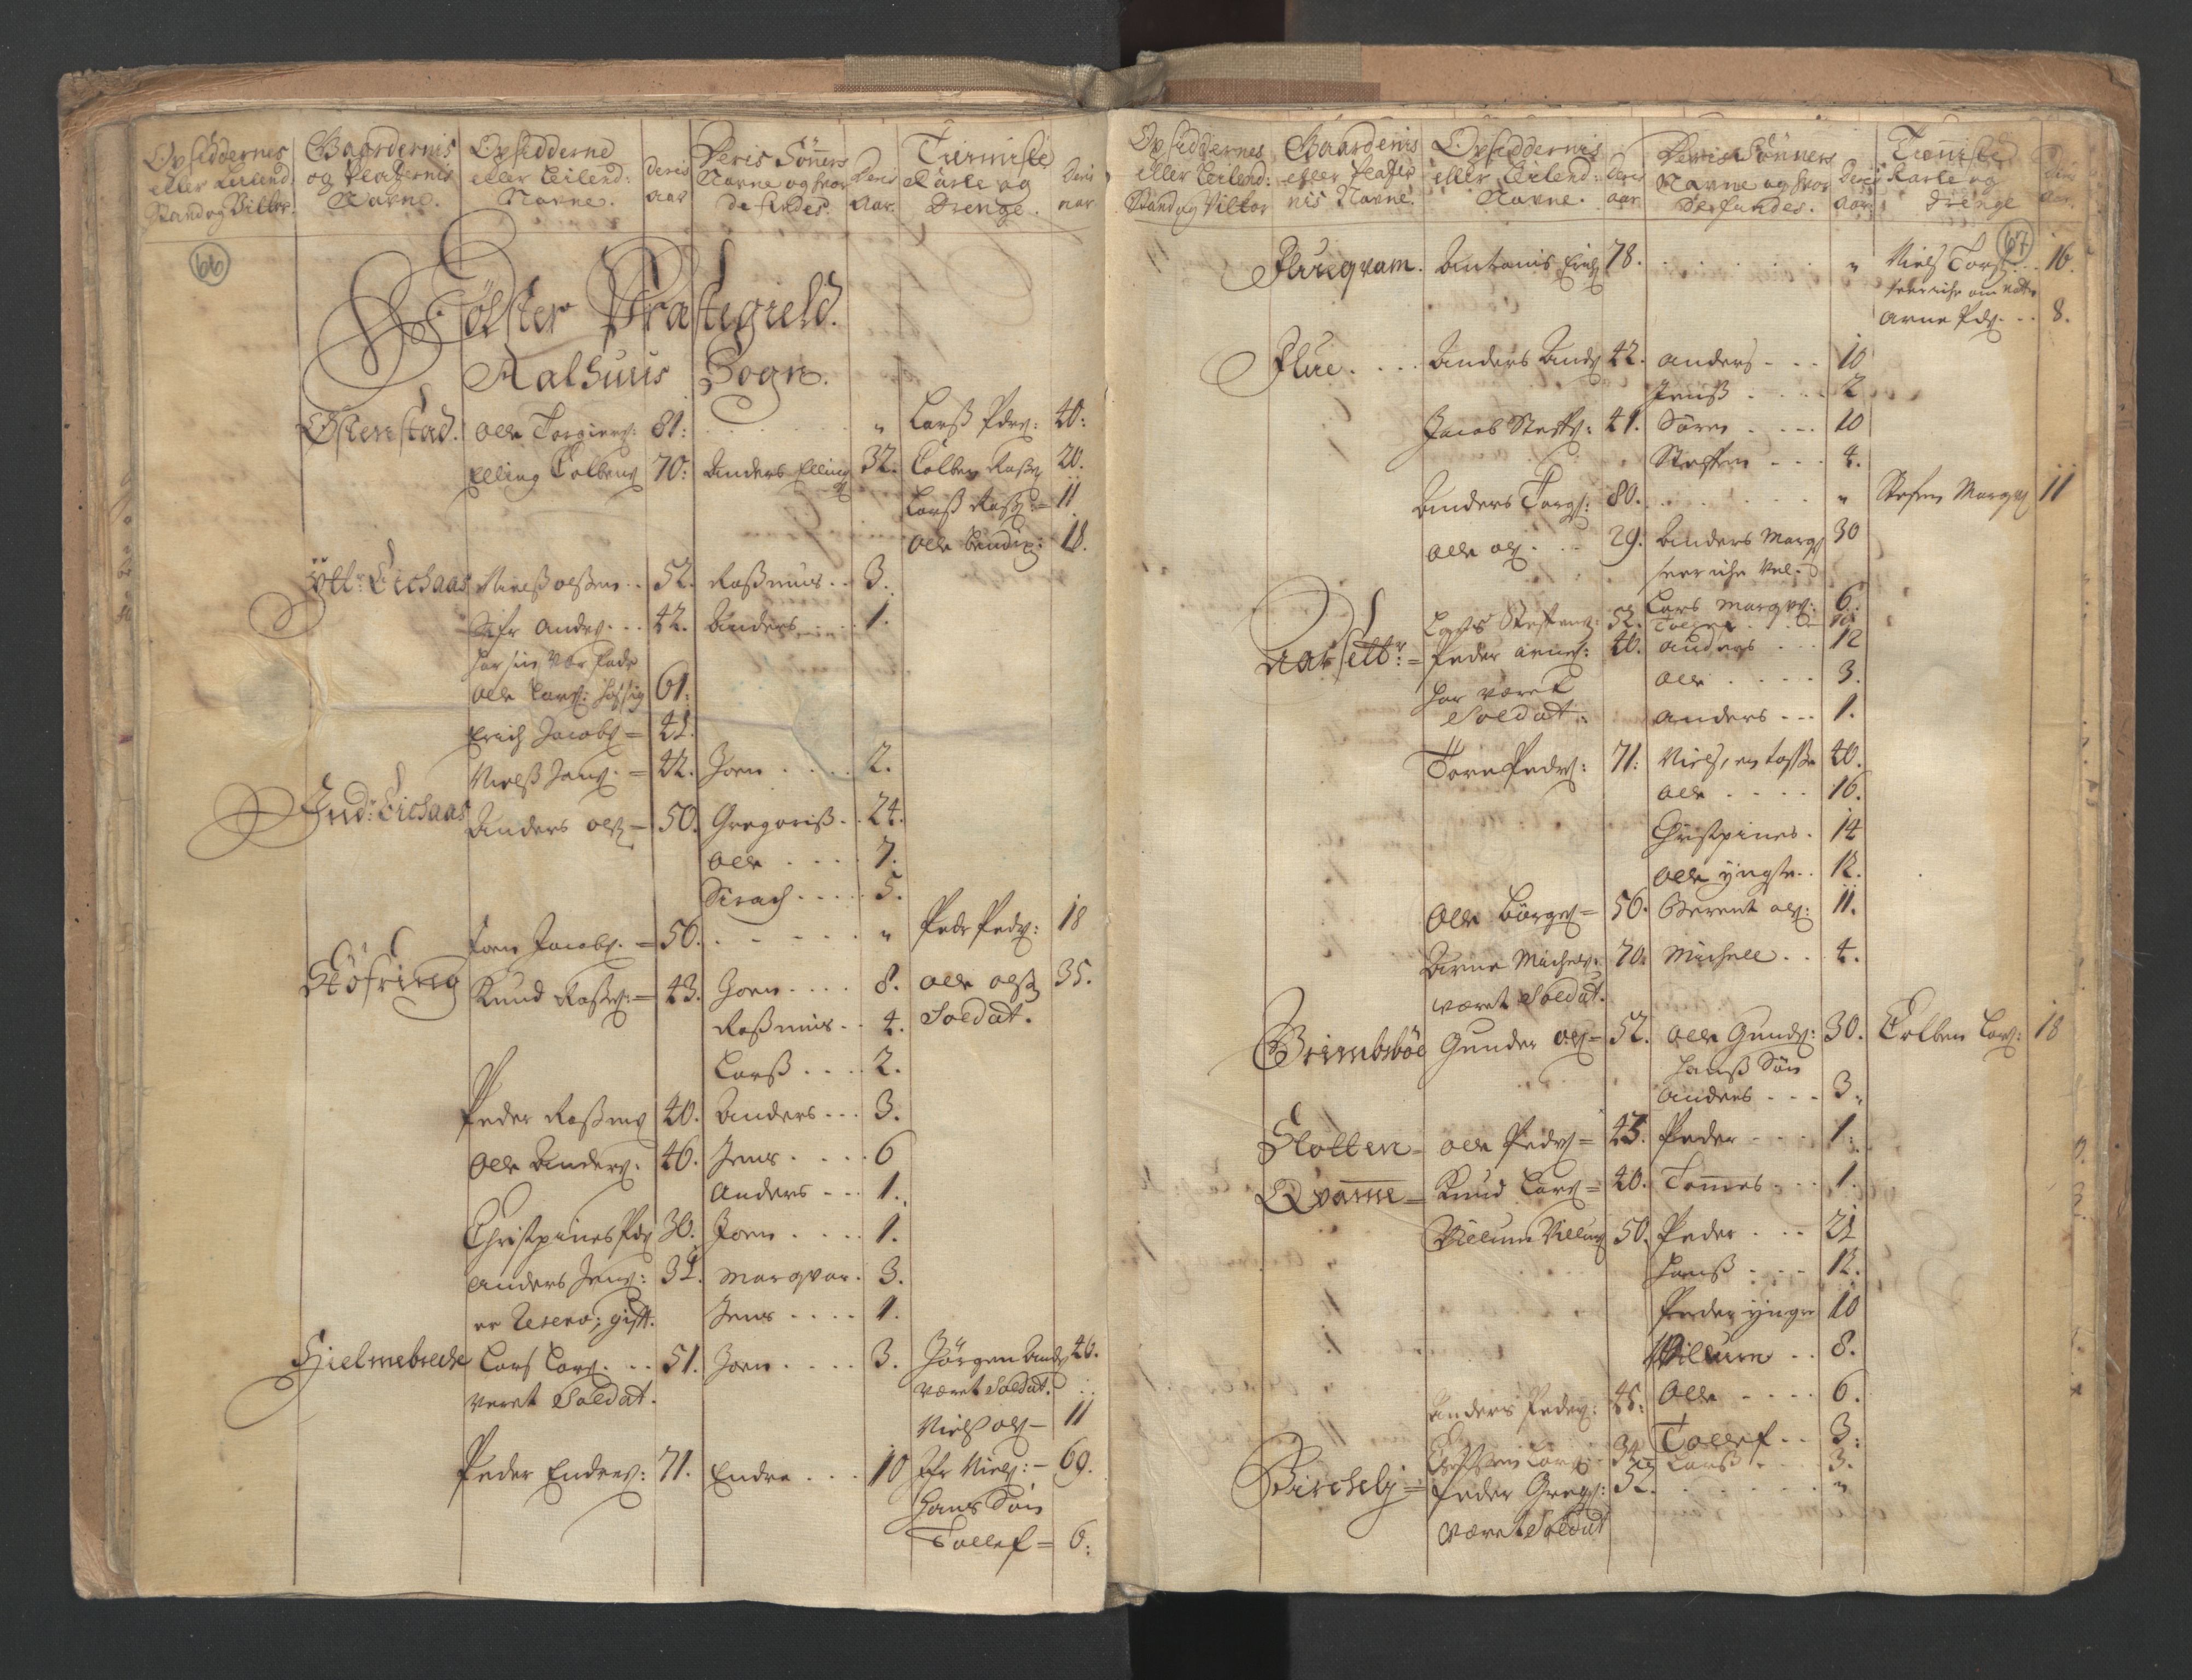 RA, Census (manntall) 1701, no. 9: Sunnfjord fogderi, Nordfjord fogderi and Svanø birk, 1701, p. 66-67